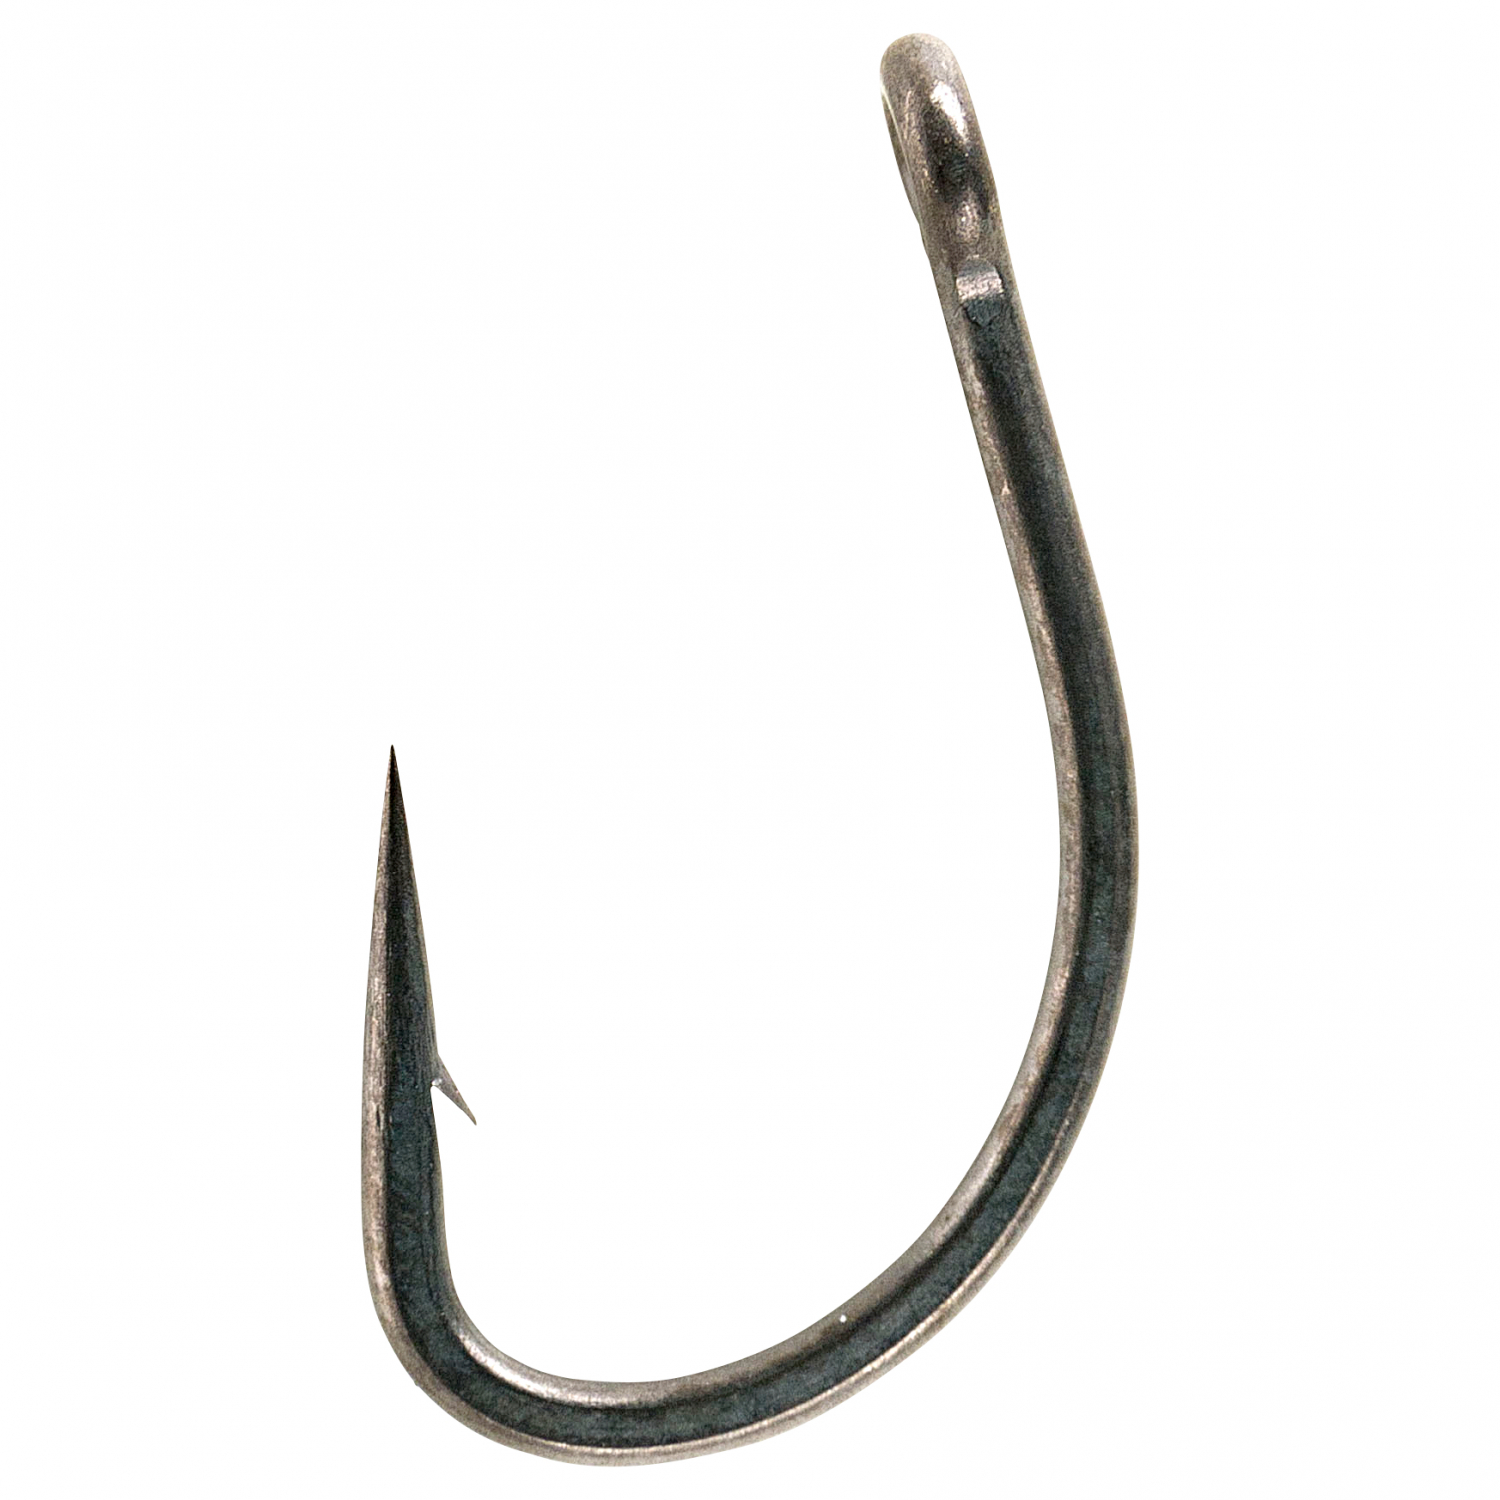 https://images.askari-sport.com/en/product/1/large/fox-carp-fishing-hooks-edges-curve-short-hooks-x10.jpg